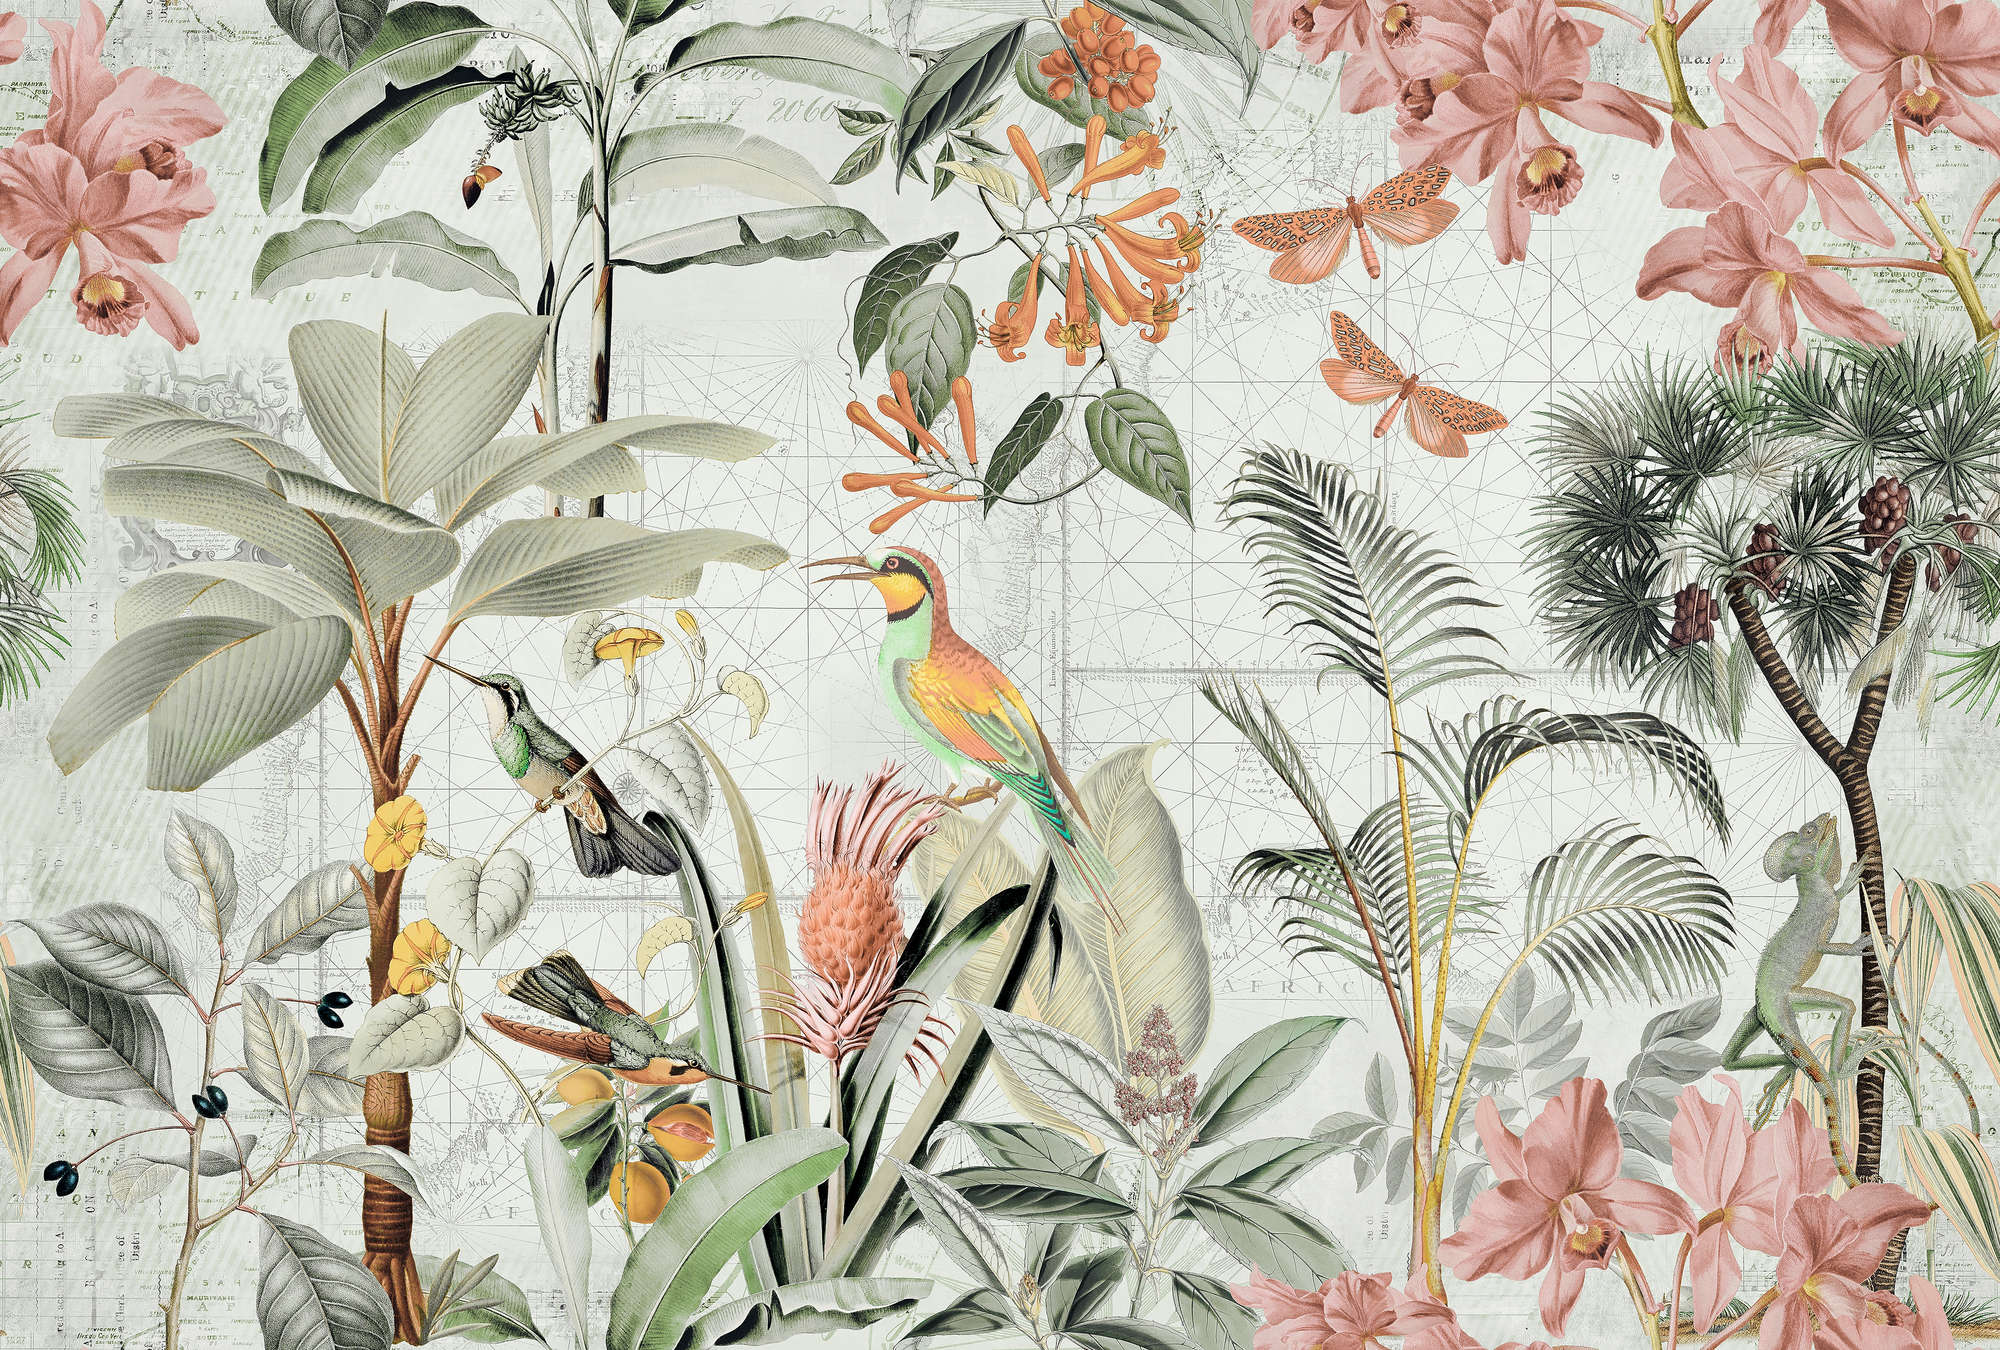             Mural de pared Collage de la selva con flores y pájaros tropicales
        